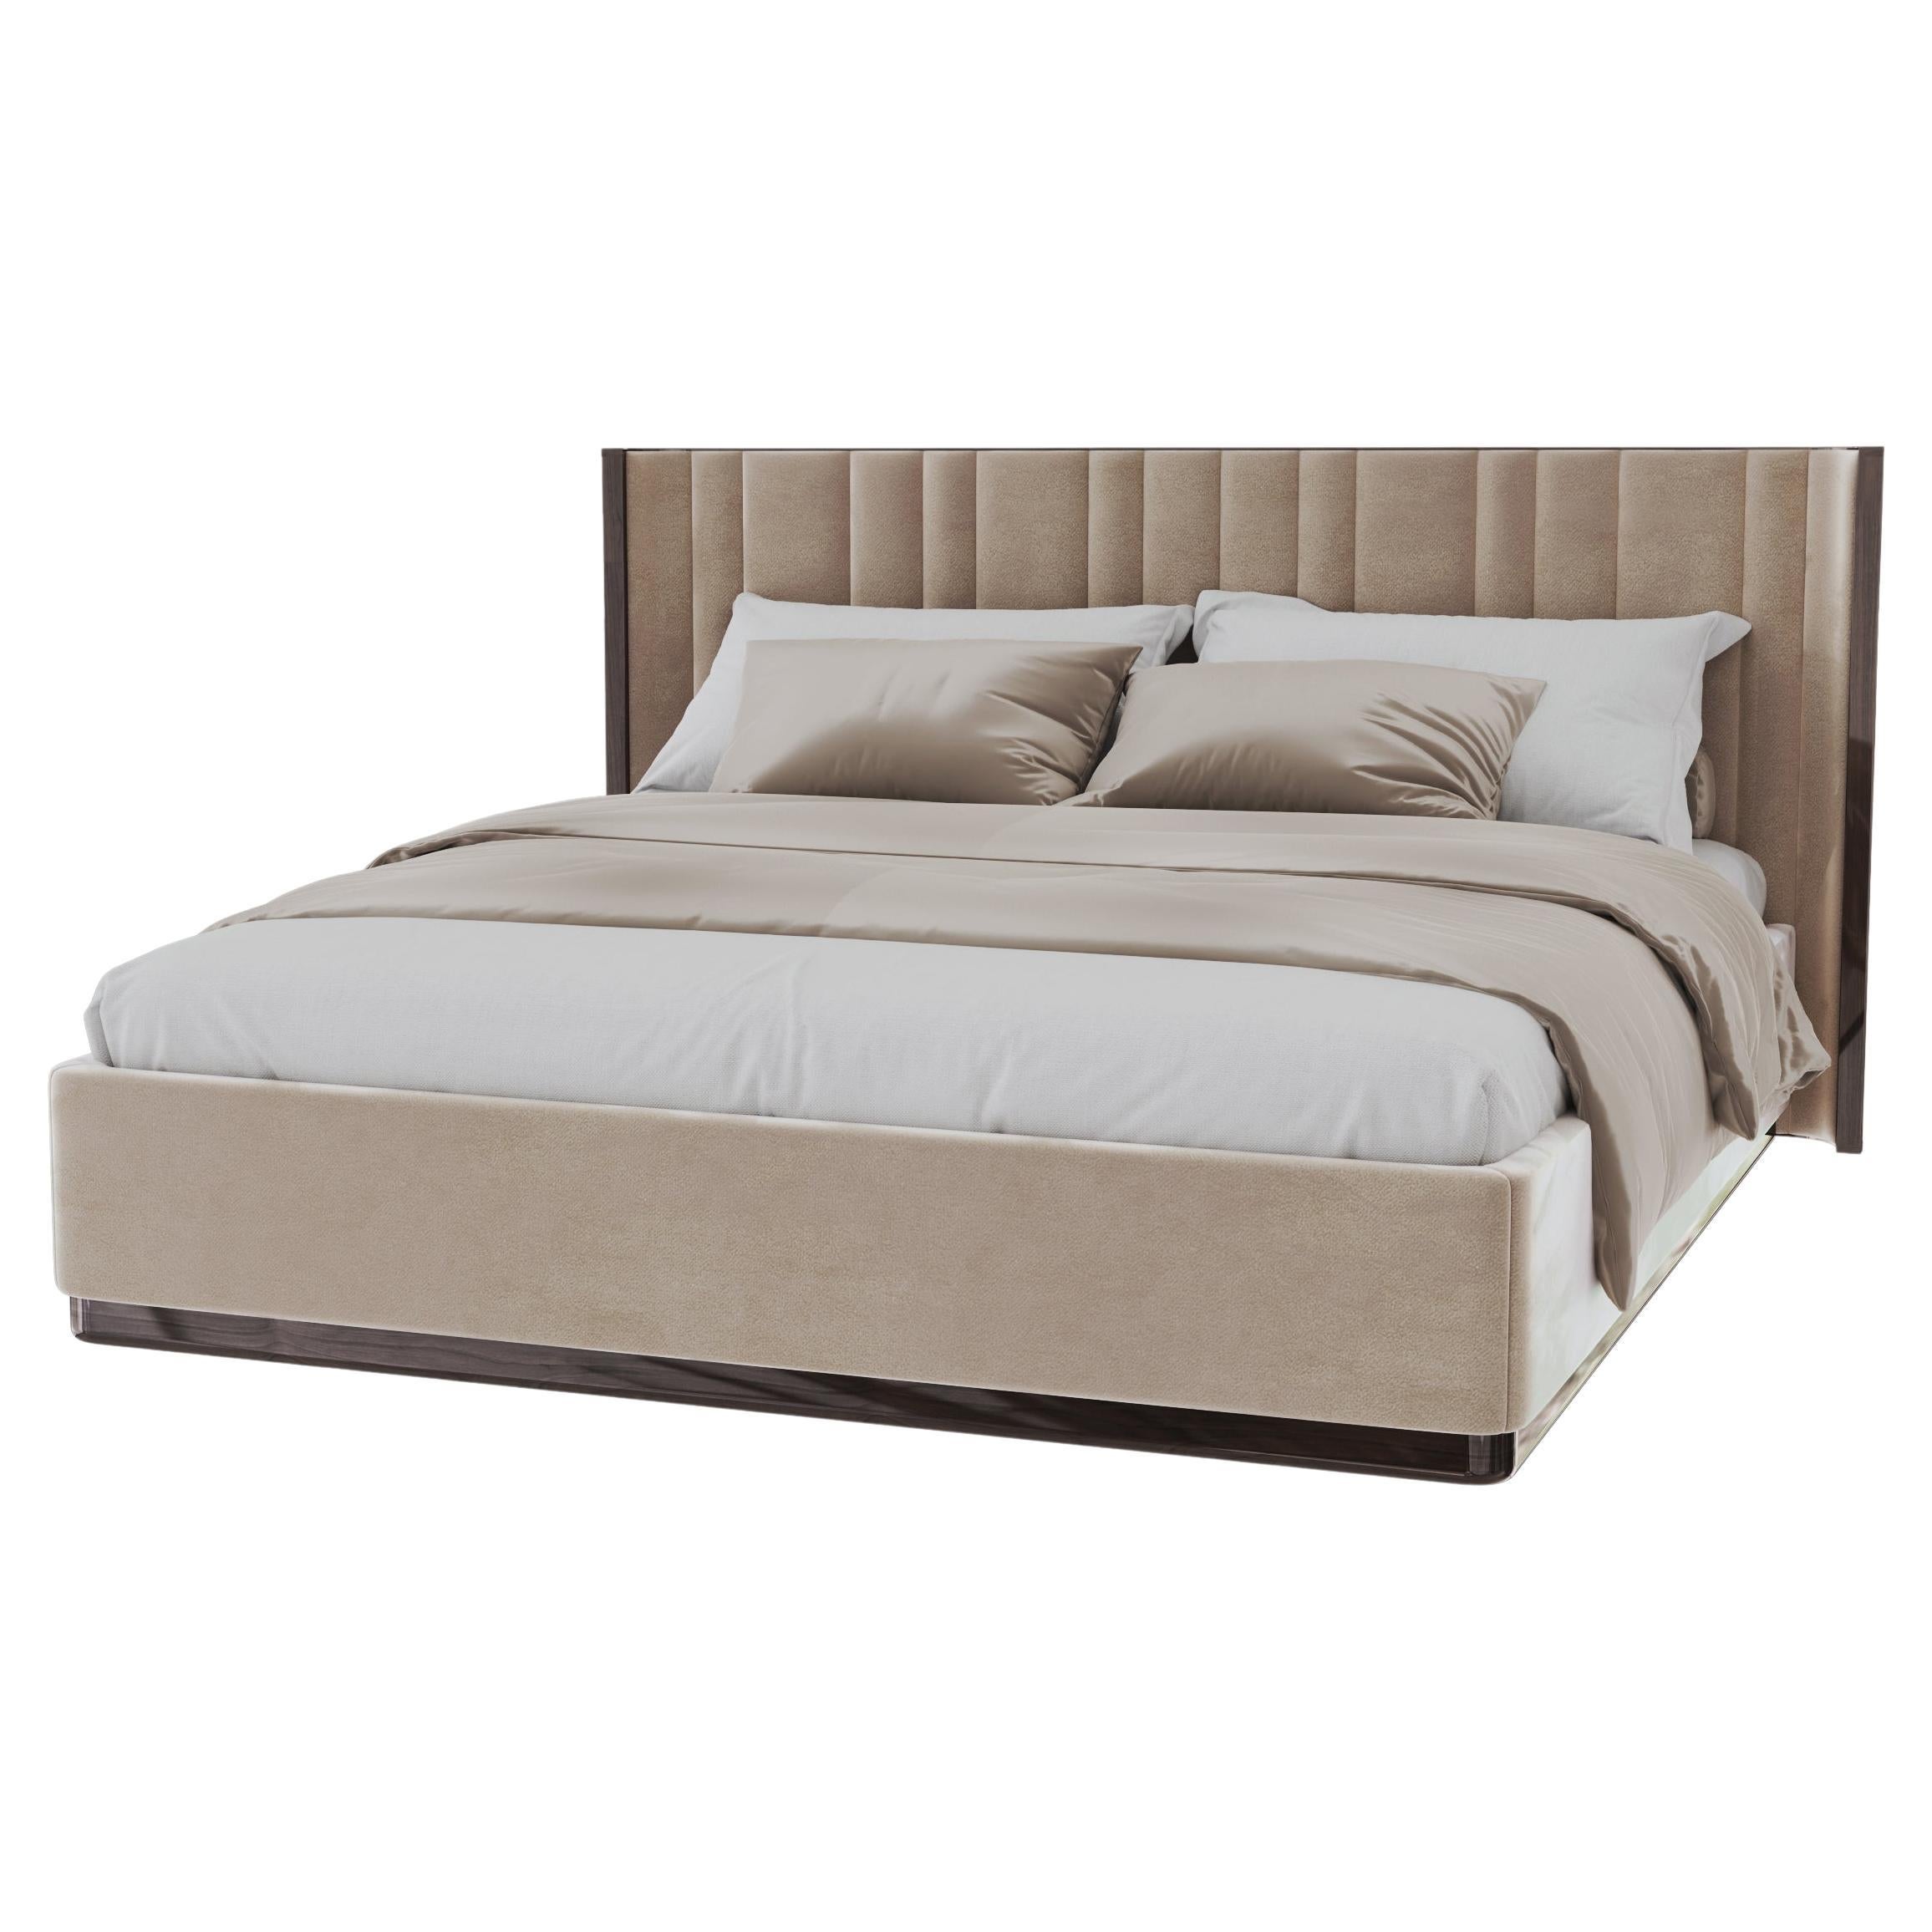 Saga 125 Italian Curved Bed Upholstered in Velvet Fabric